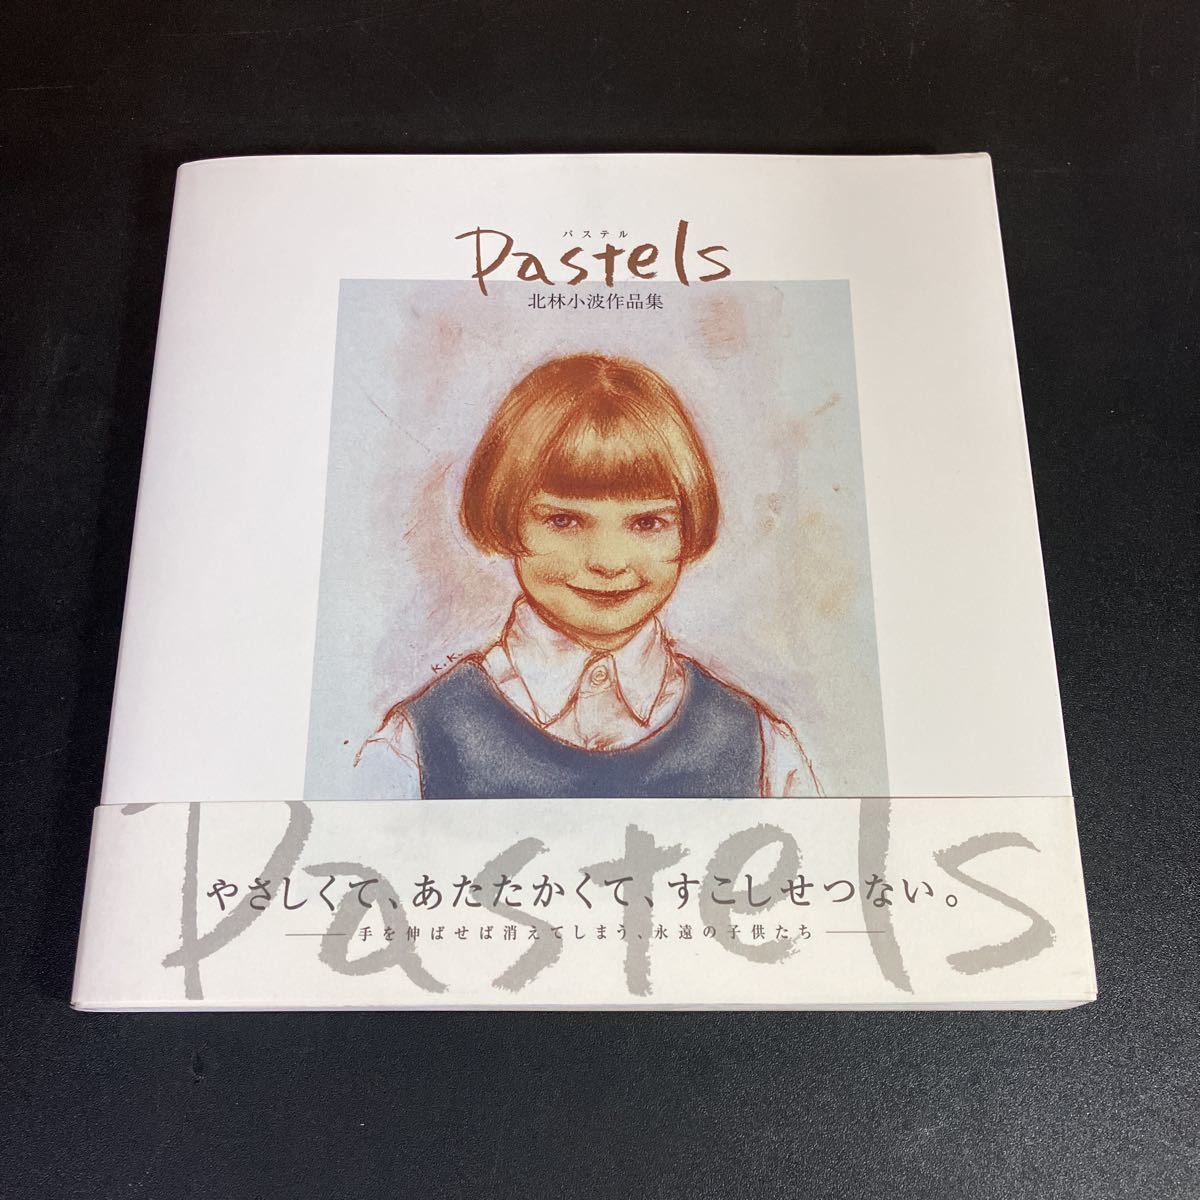 23-10-4 Pastels : une collection d'œuvres de Kitabayashi Konami par Rojosha, Peinture, Livre d'art, Collection, Livre d'art